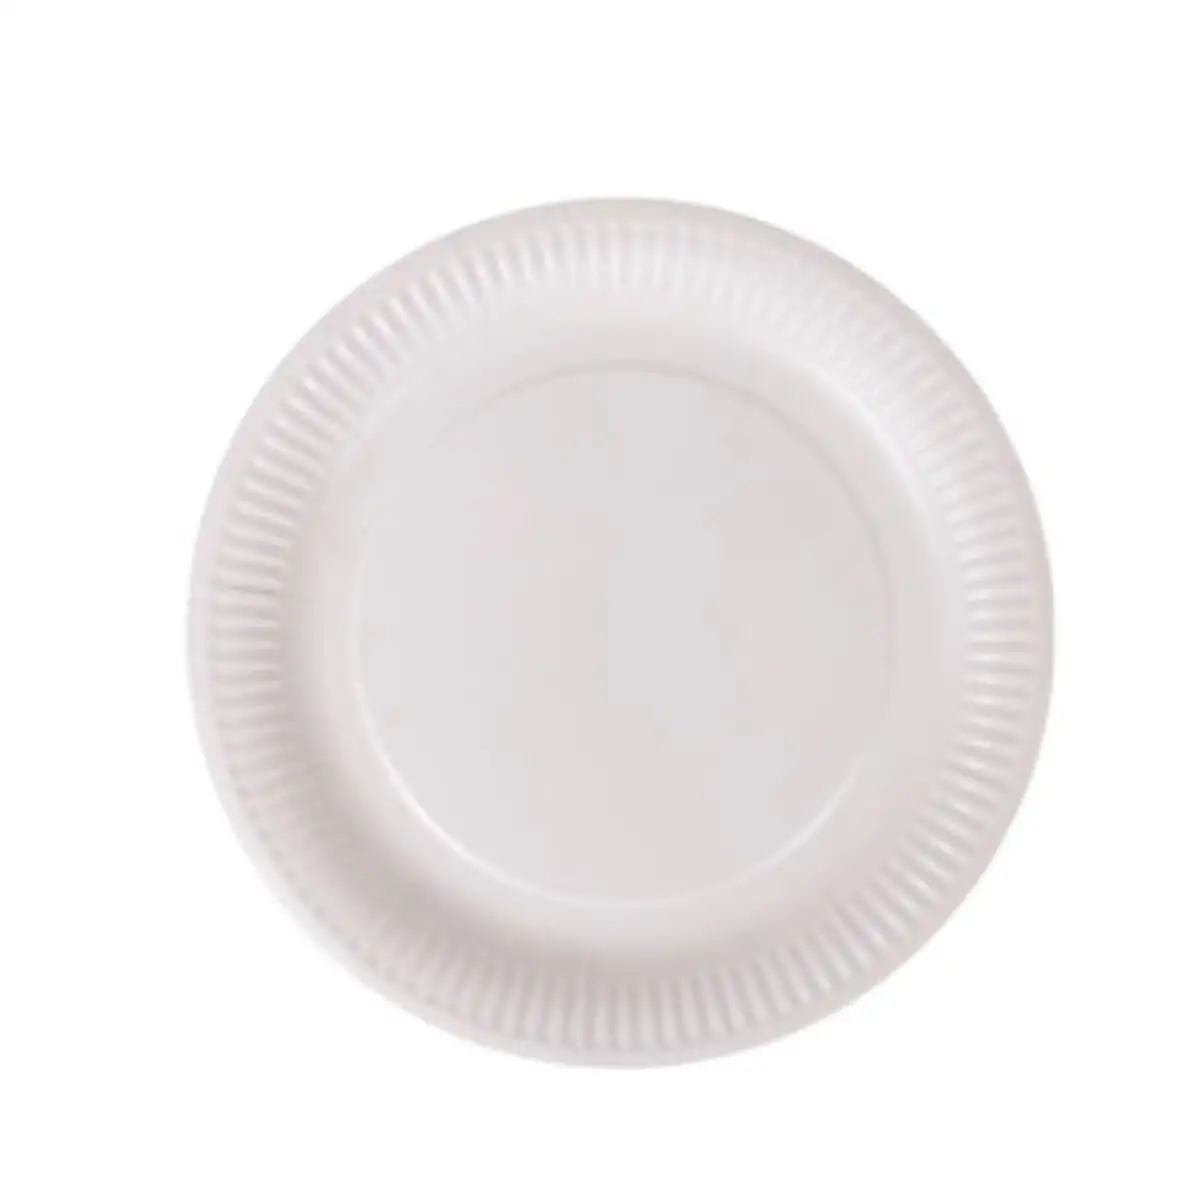 Service de vaisselle algon blanc carton produits a usage unique 23 cm 10 unites_5985. DIAYTAR SENEGAL - Votre Destination pour un Shopping Réfléchi. Découvrez notre gamme variée et choisissez des produits qui correspondent à vos valeurs et à votre style de vie.